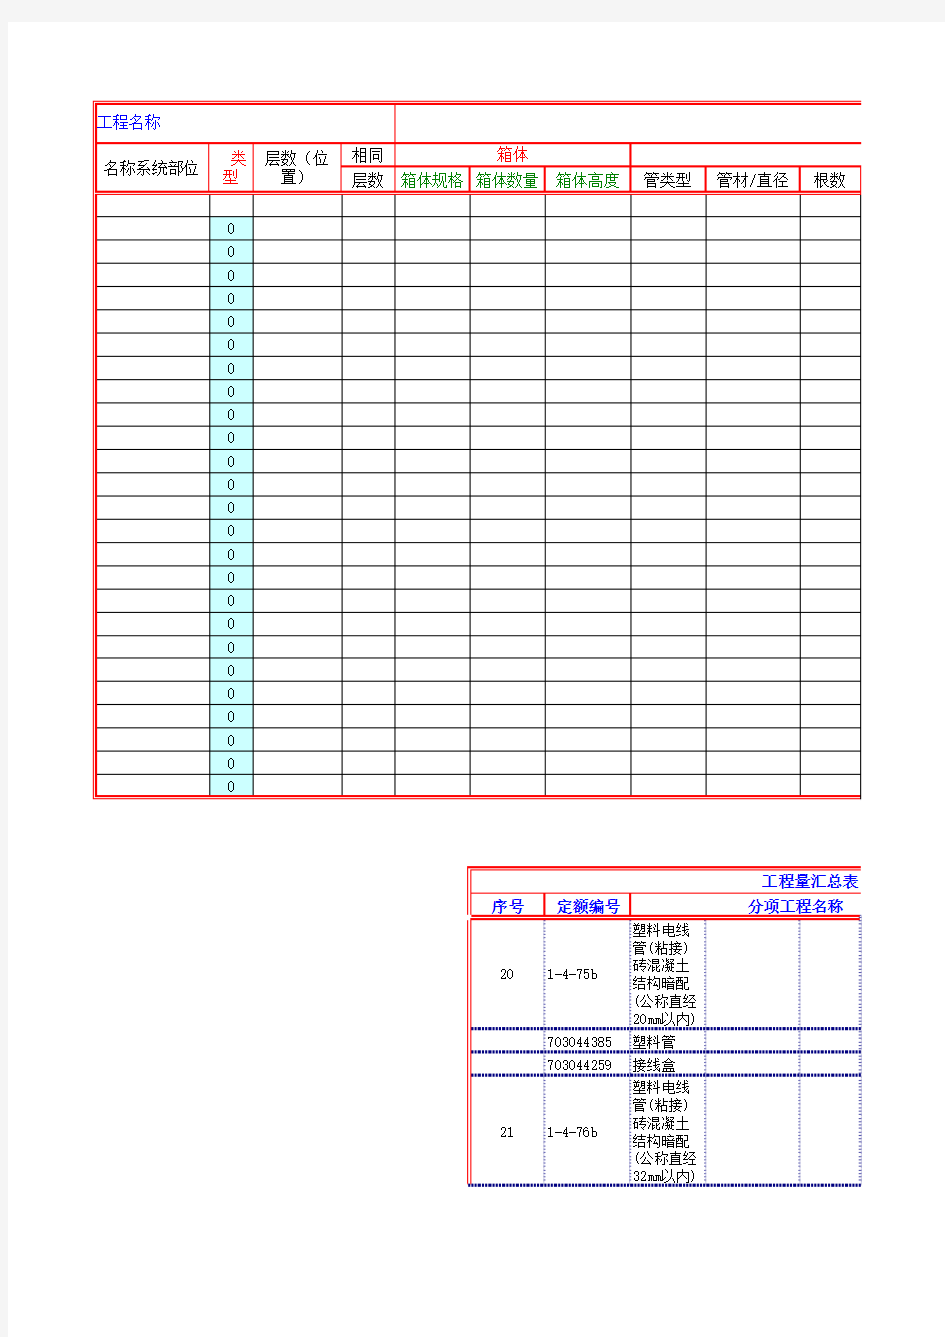 高层安装工程工程量计算表(水电安装)